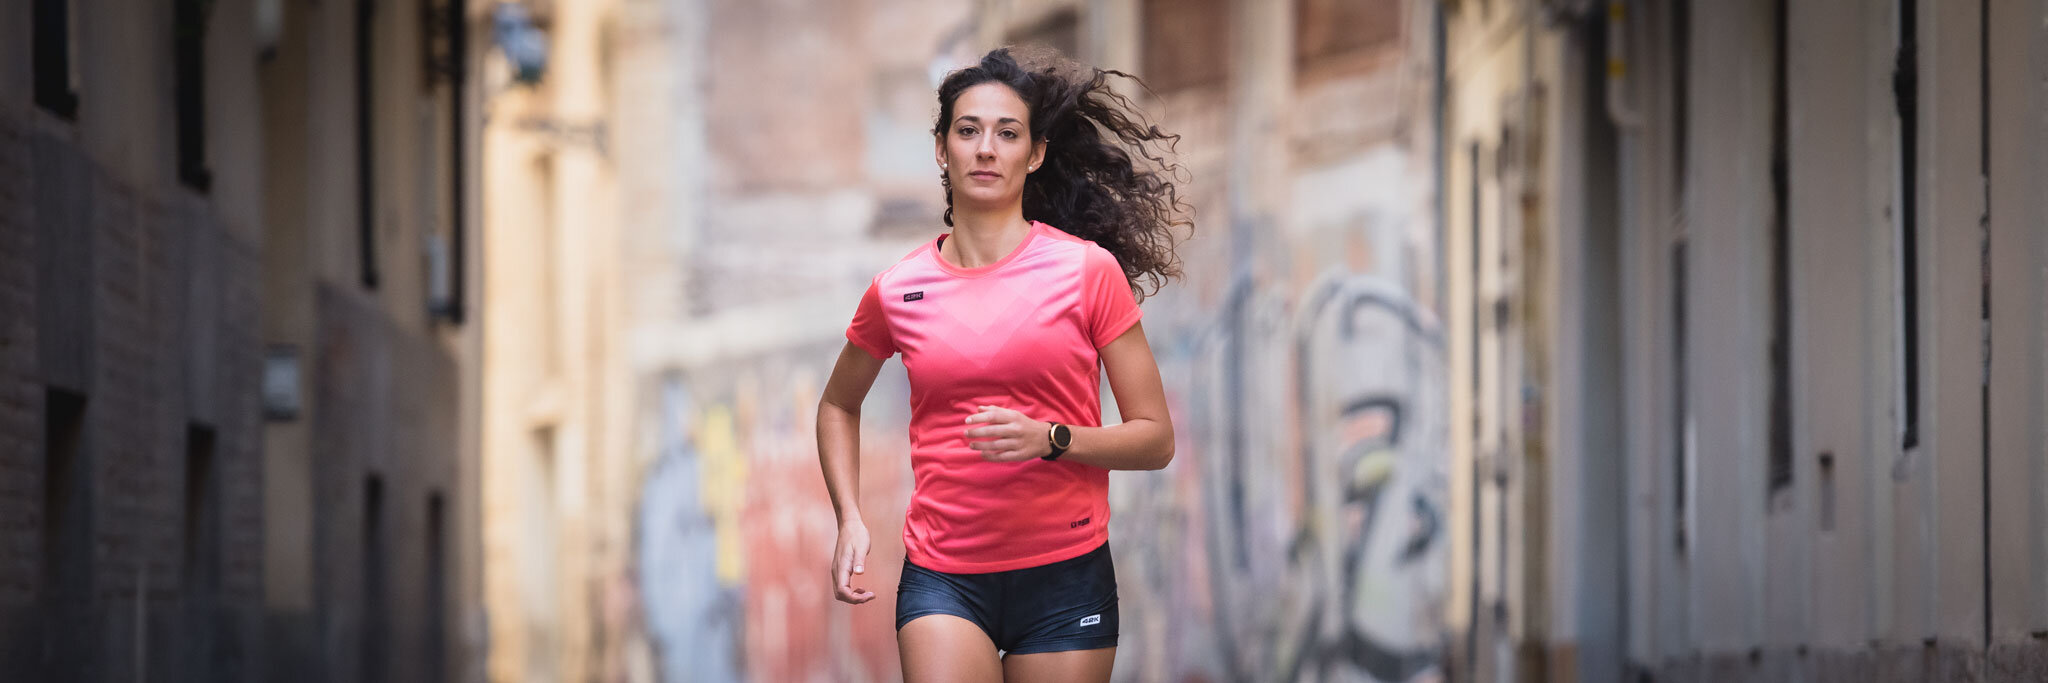 Running Mujer - Ropa running mujer, trail running y multideporte